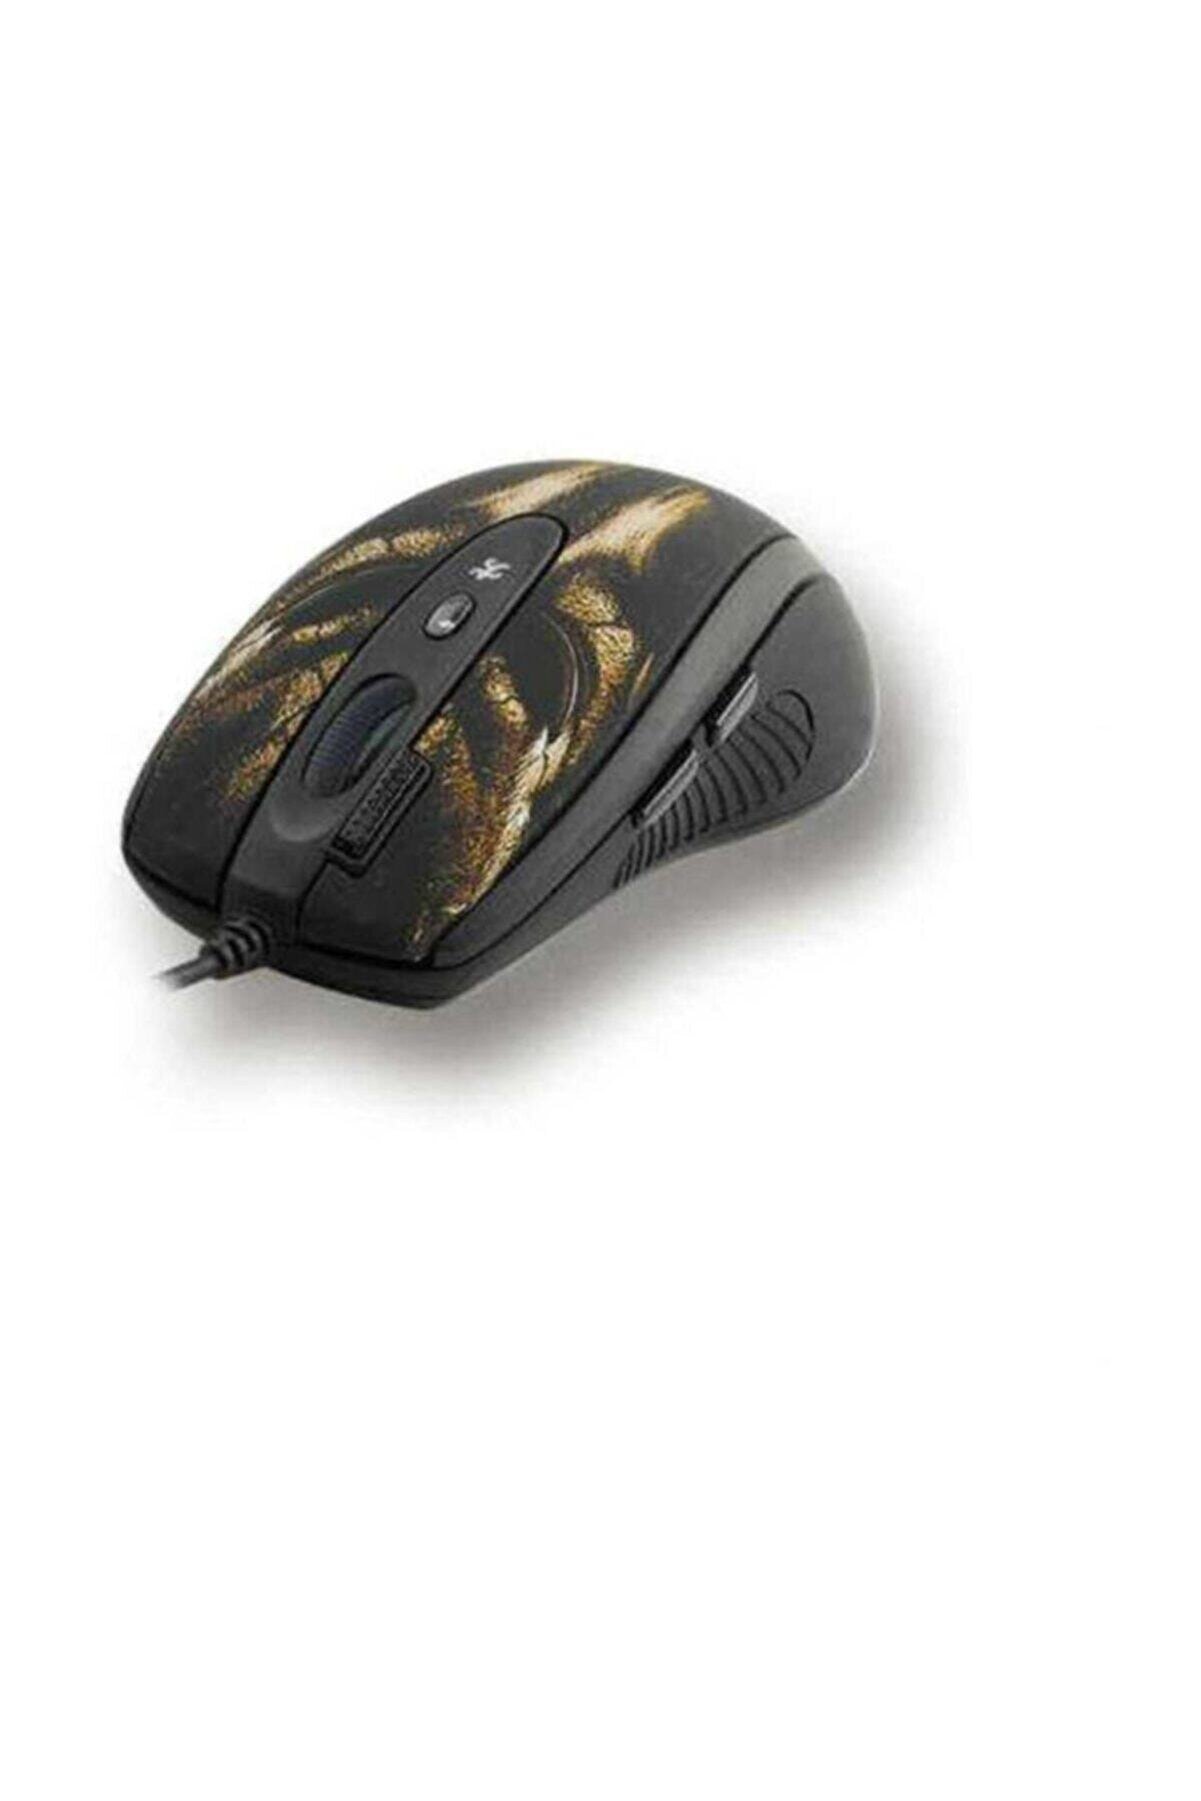 A4 Tech Xl-750bh Anti-vibrate Bronz Lazer Kablolu Gaming Mouse